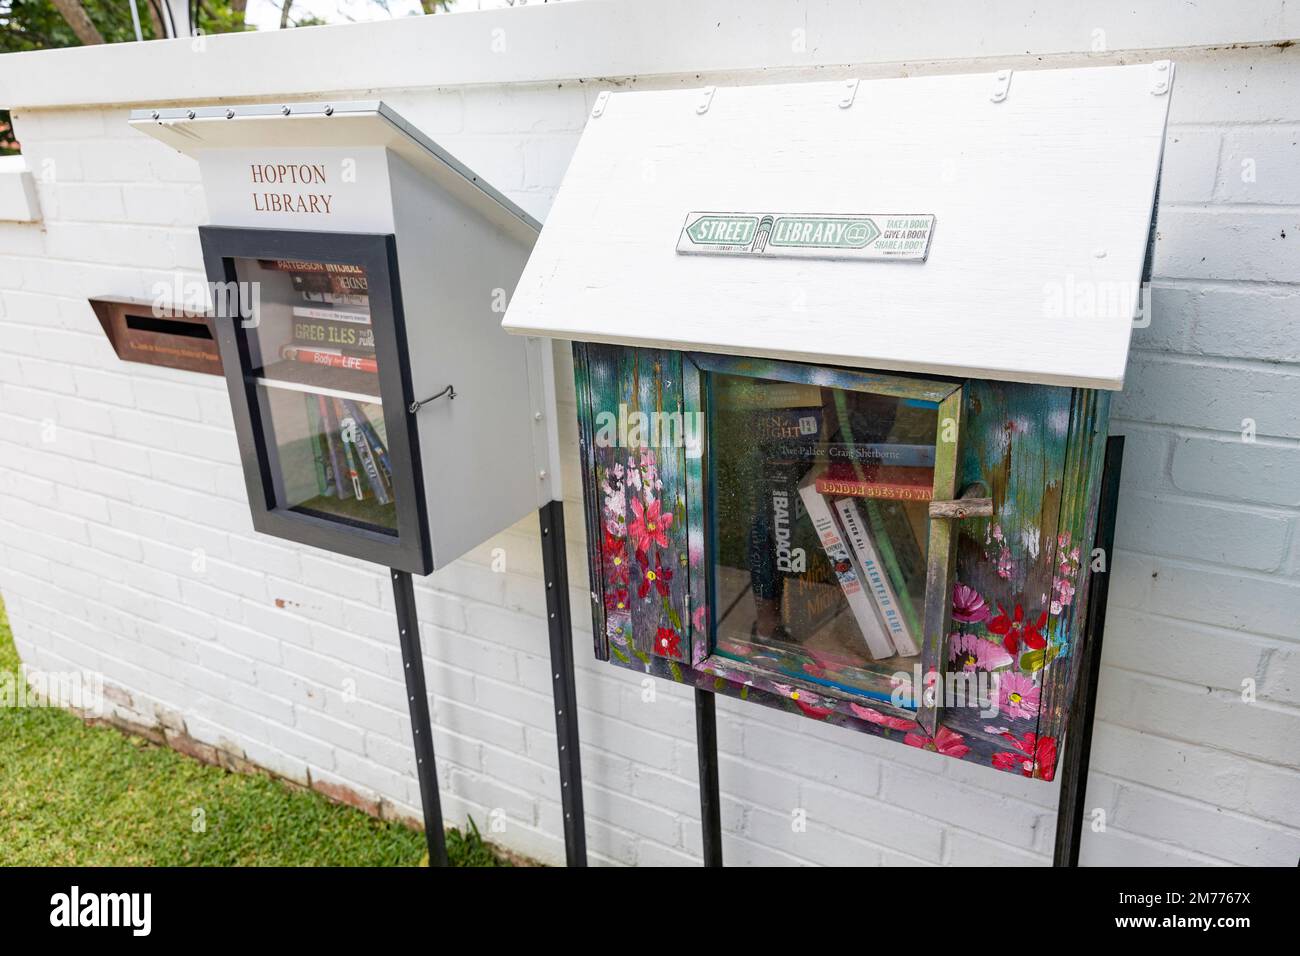 Kostenlose Bücher kleine lokale Bibliothek in Bayview Sydney, Leute leihen, leihen und leihen Bücher kostenlos, Sydney, Australien Stockfoto